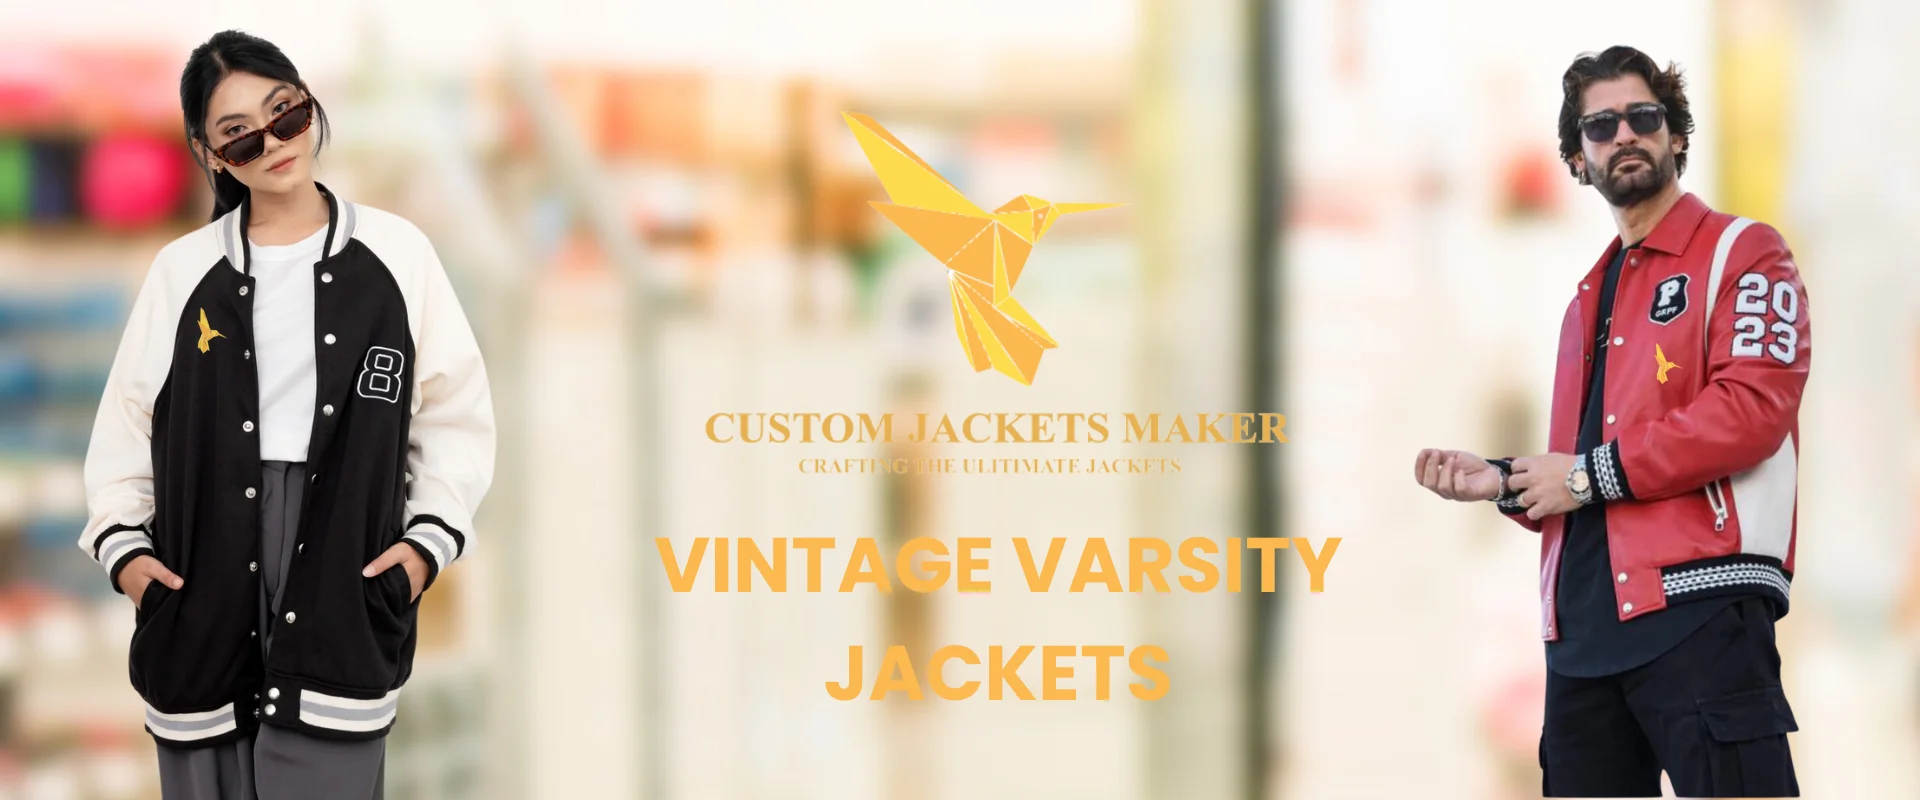 Banner Image of Vintage Varsity Jacket 